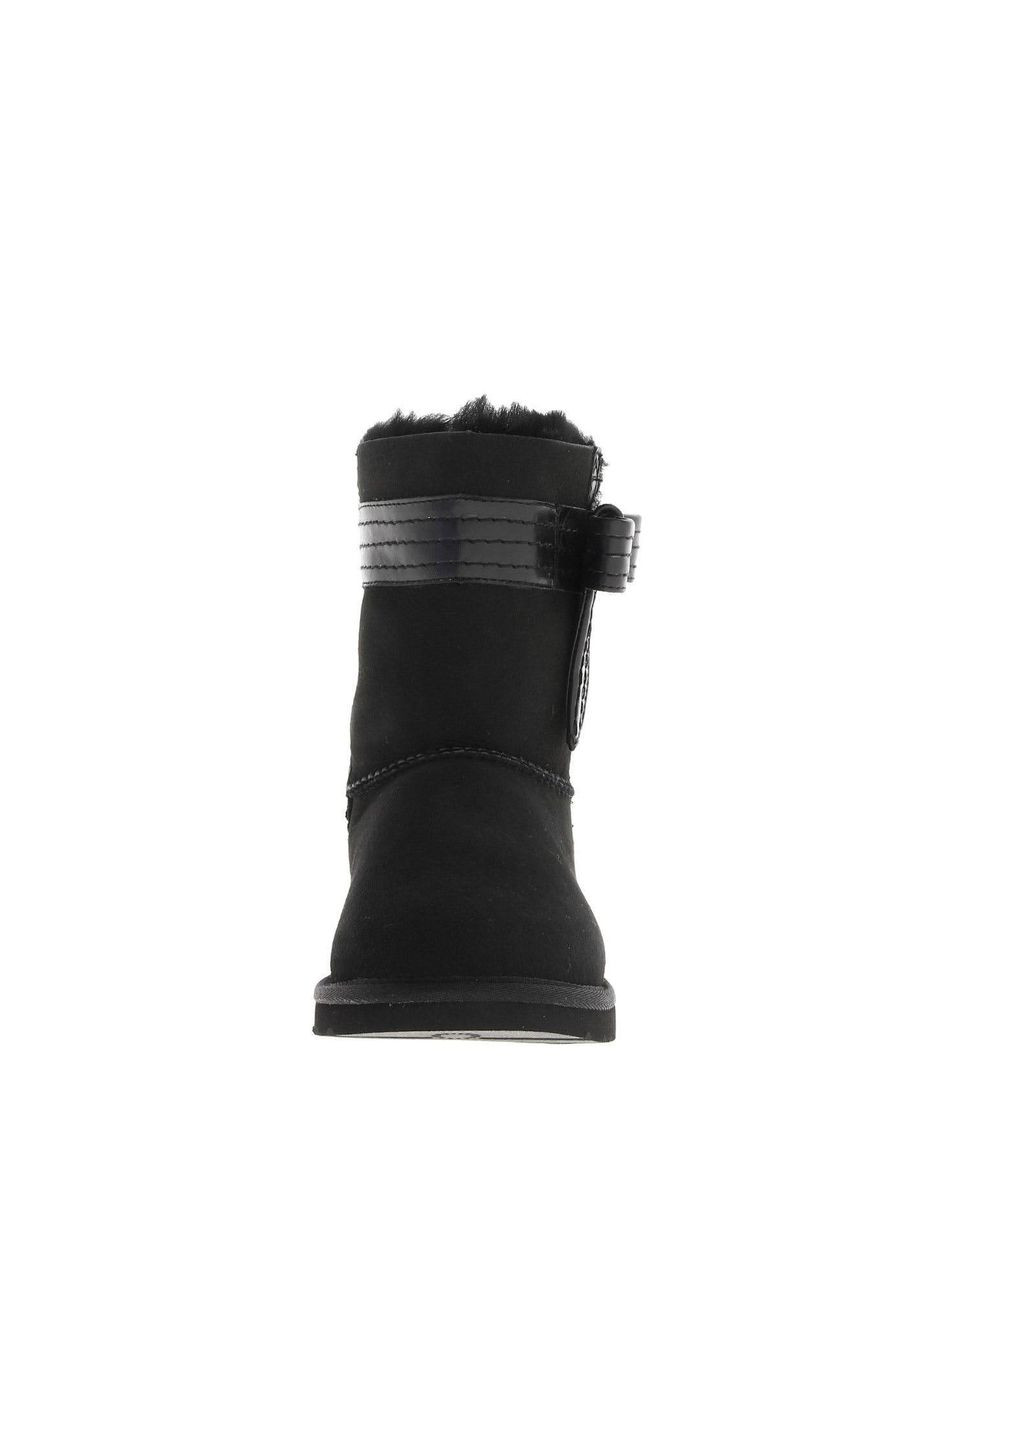 Черные угги australia josette black с декоративными кожаным бантом сбоку (размер 38) UGG